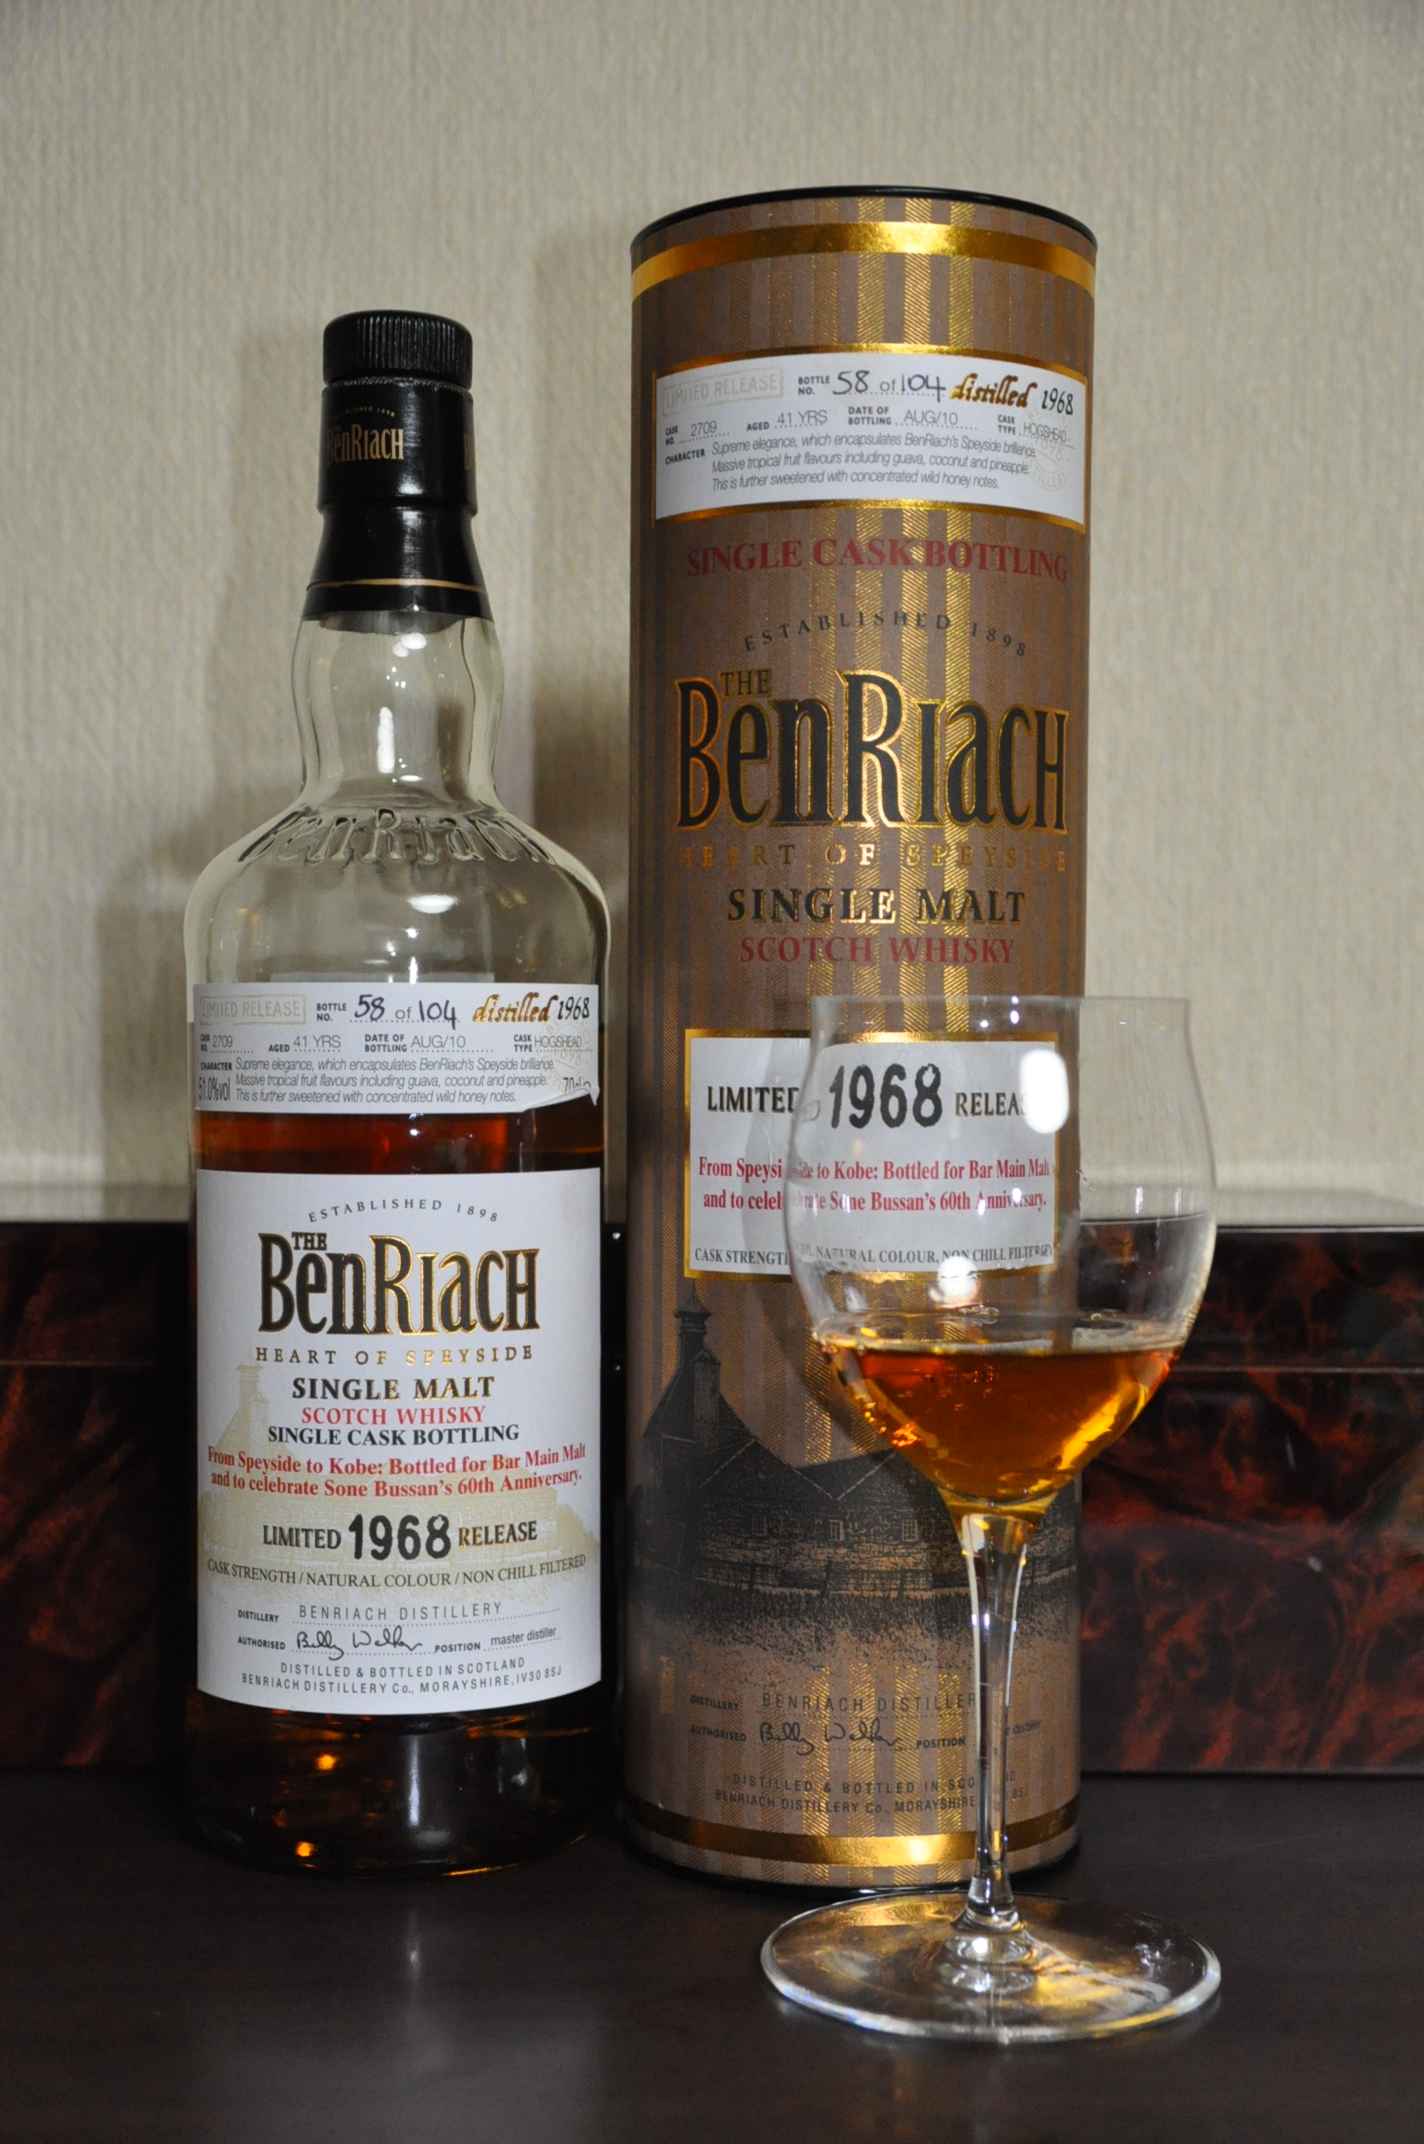 ベンリアック Benriach 41yo 1968/2010 (51.0%, OB, Hogshead, C#2709, 58/104 Bts.) From Speyside to Kobe: Bottled for Bar Main Malt and to celebrate Sone Bussan’s 60th Anniversary